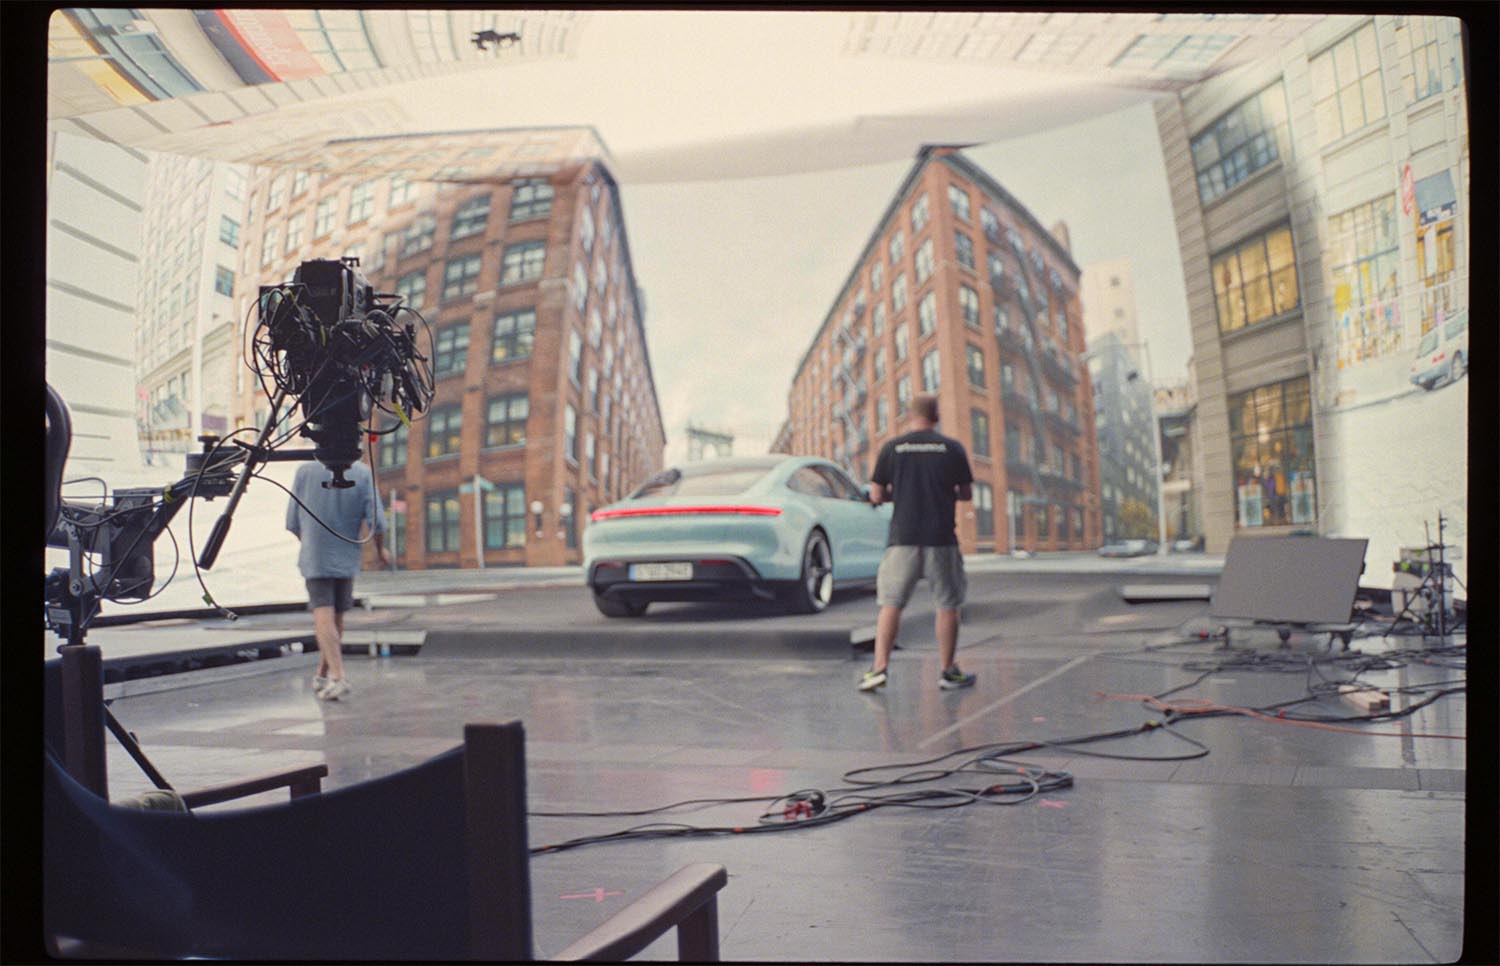 Filmproduktion Hyperbowl Studio München Porsche Taycan vor New York Kulisse im Studio